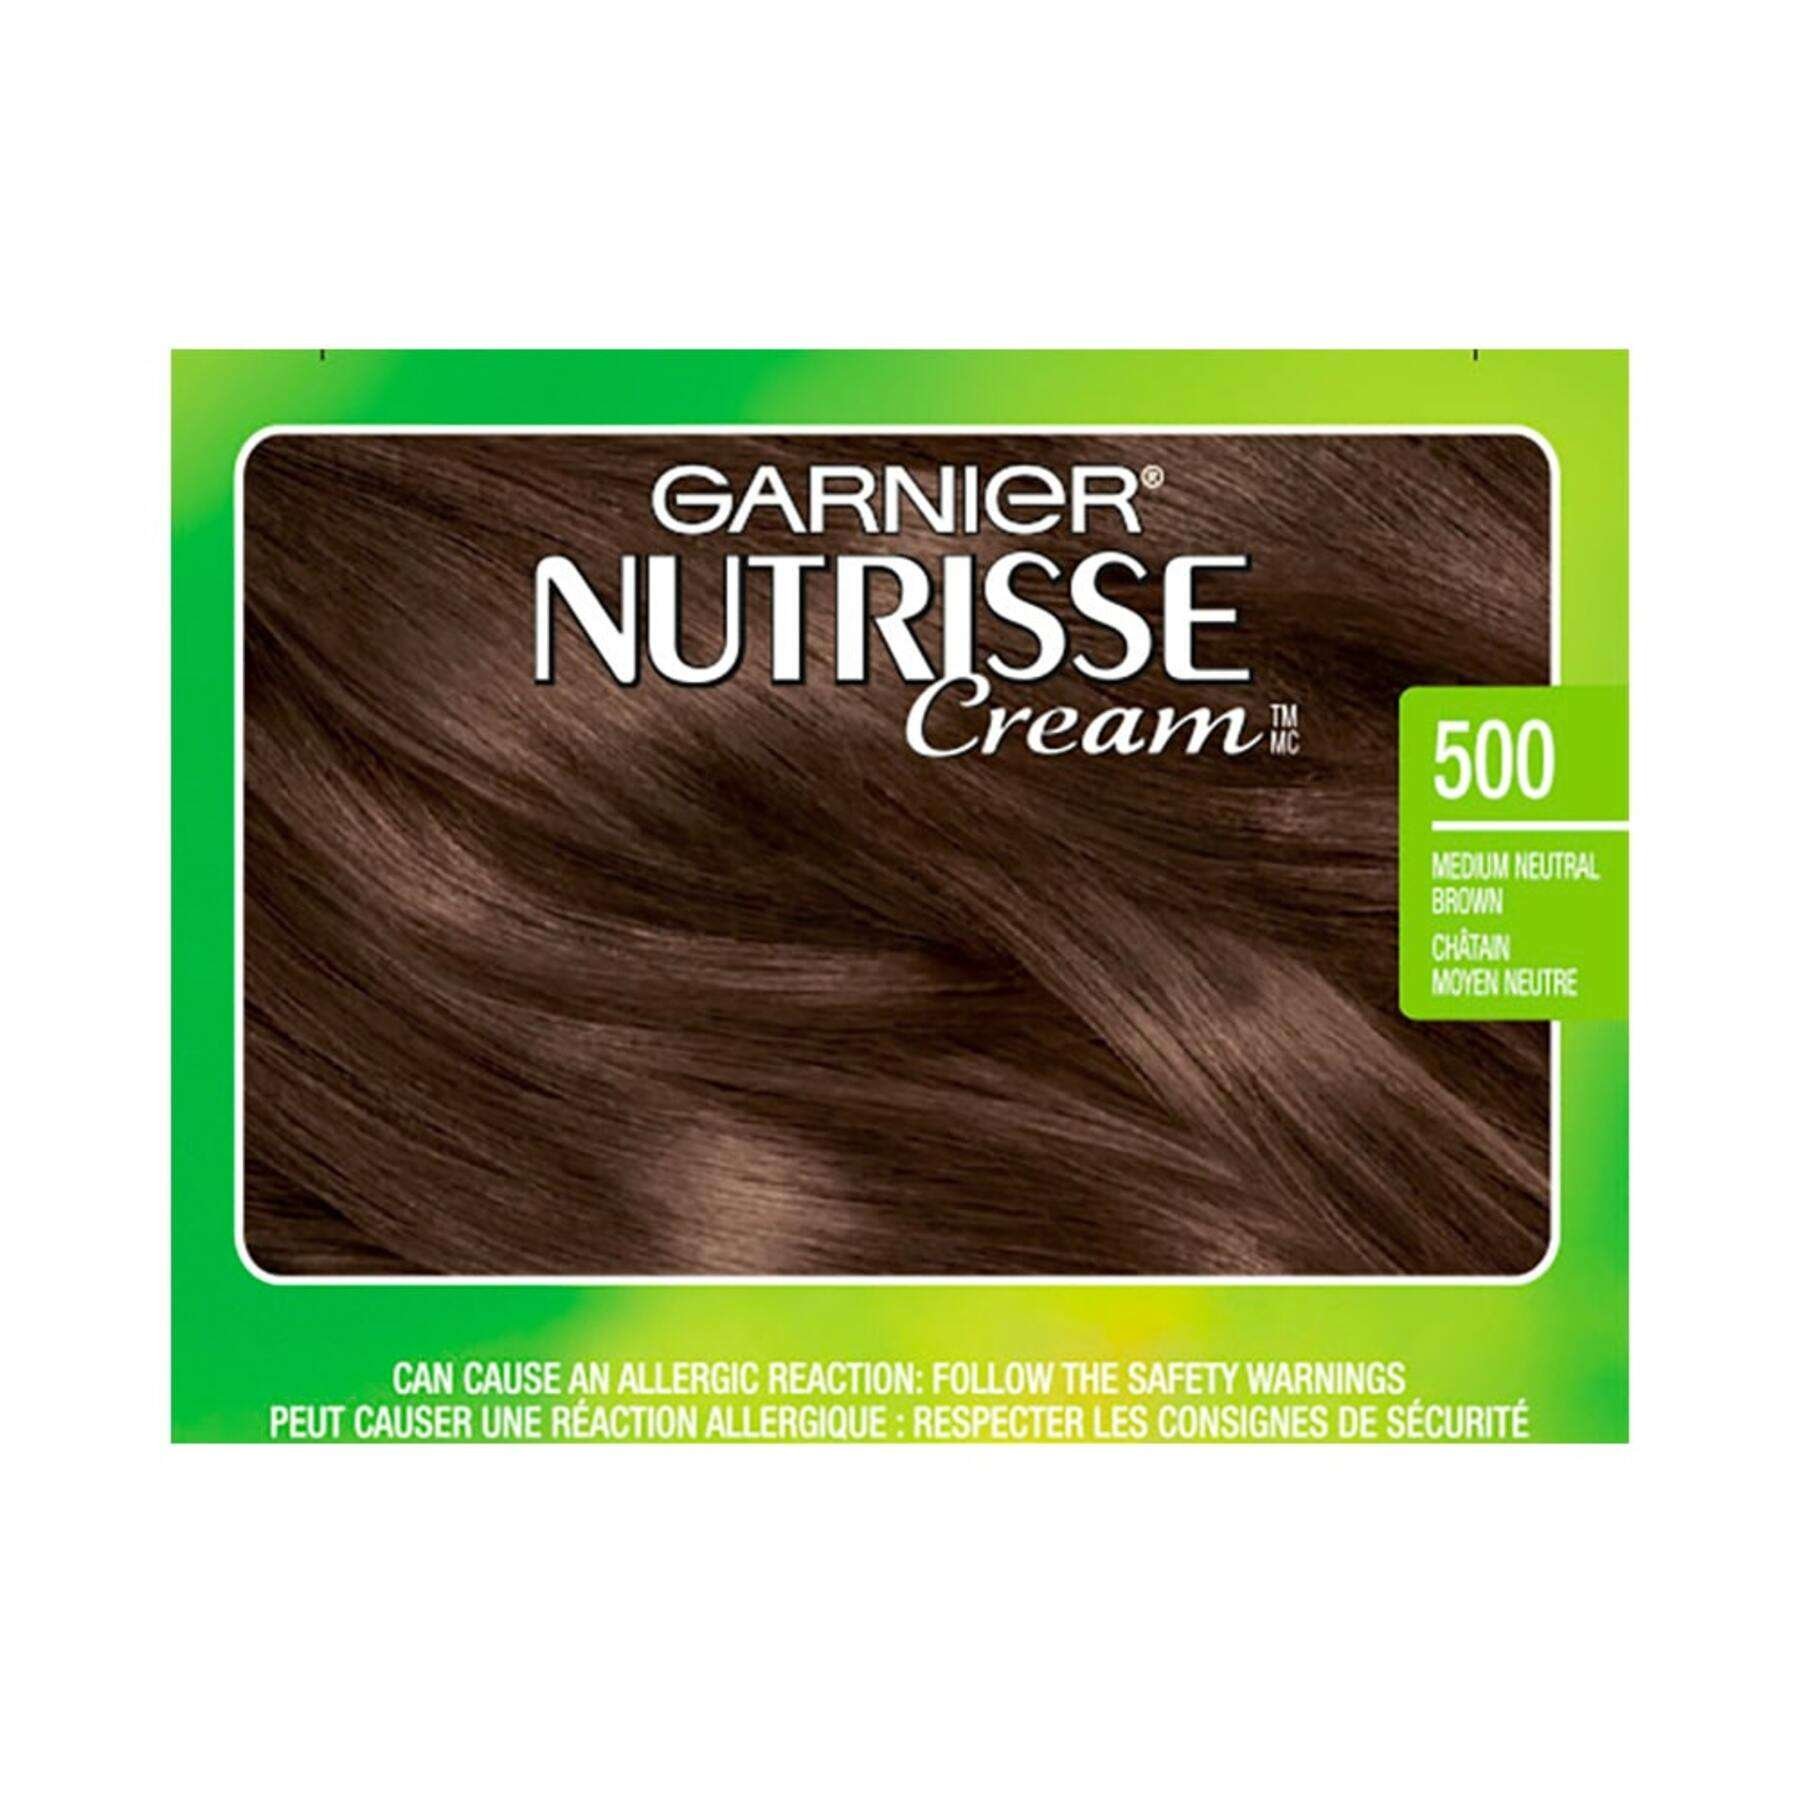 garnier hair dye nutrisse cream 500 medium neutral brown 0603084469321 swatch